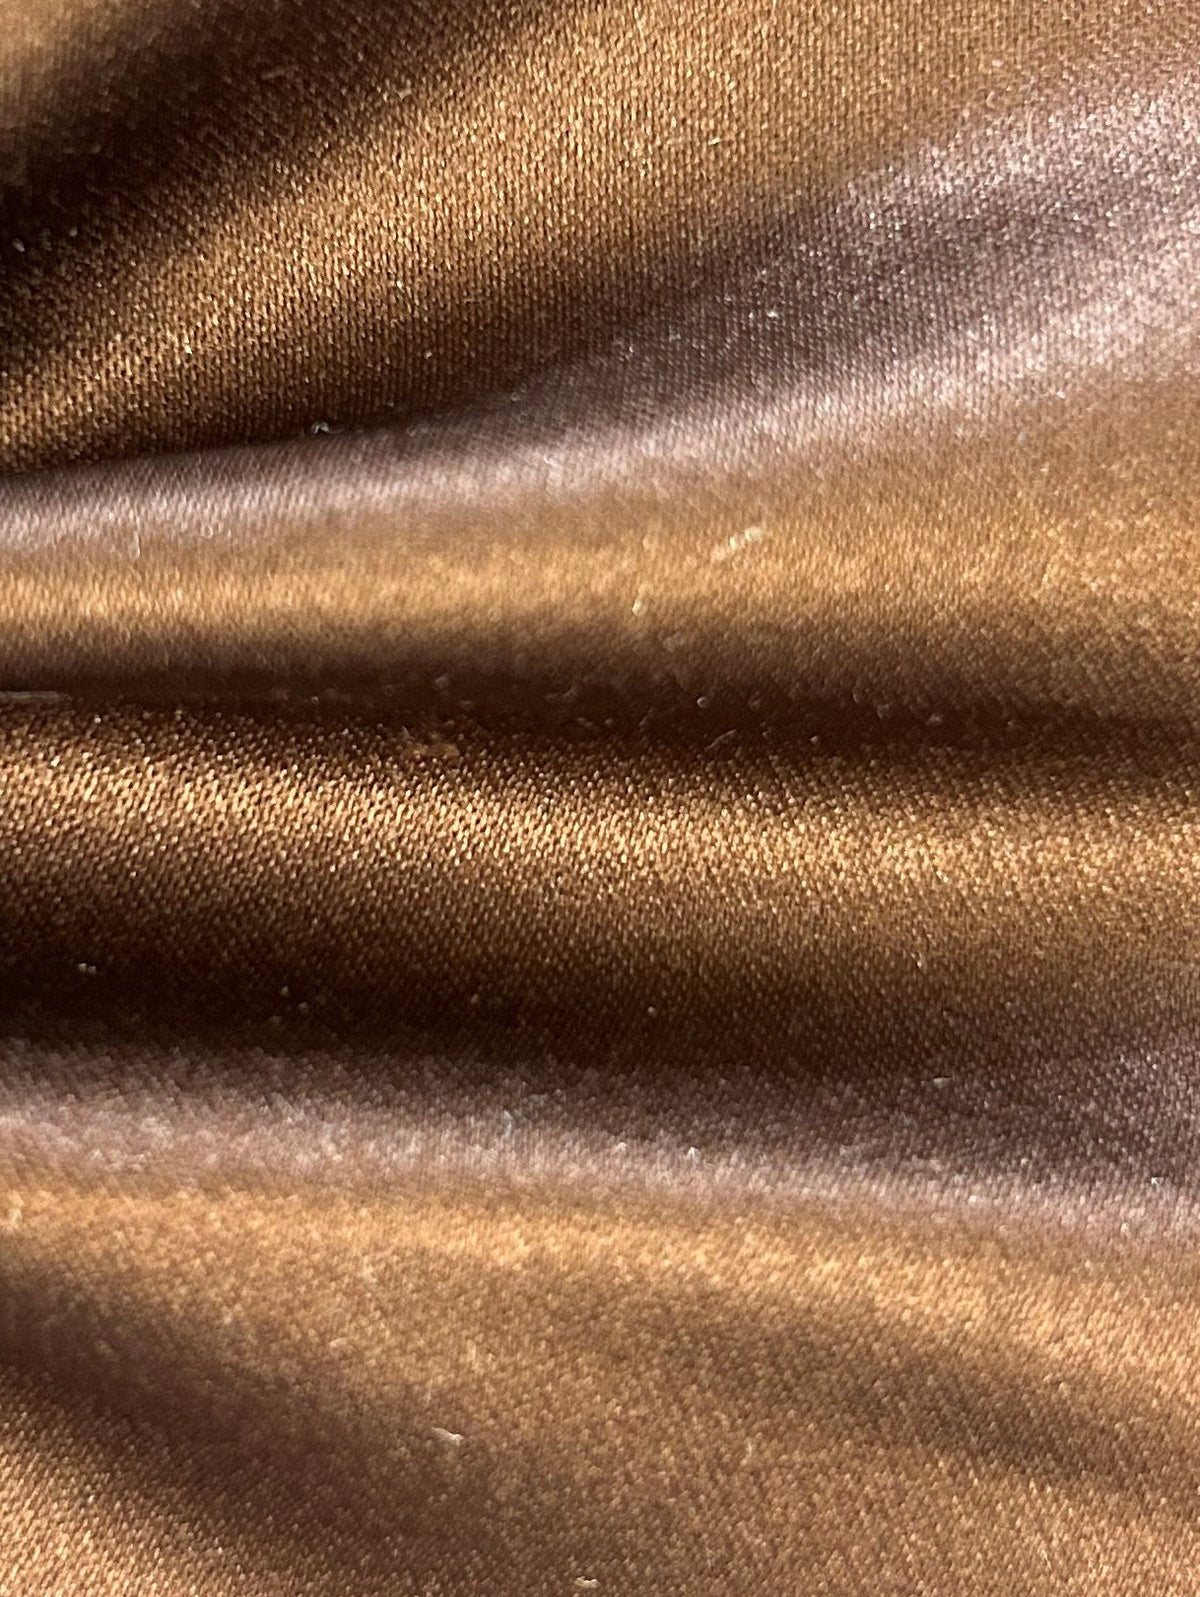 Schokoladenfarbener Polyester-Satin (148 cm/58 Zoll) – Majestätisch